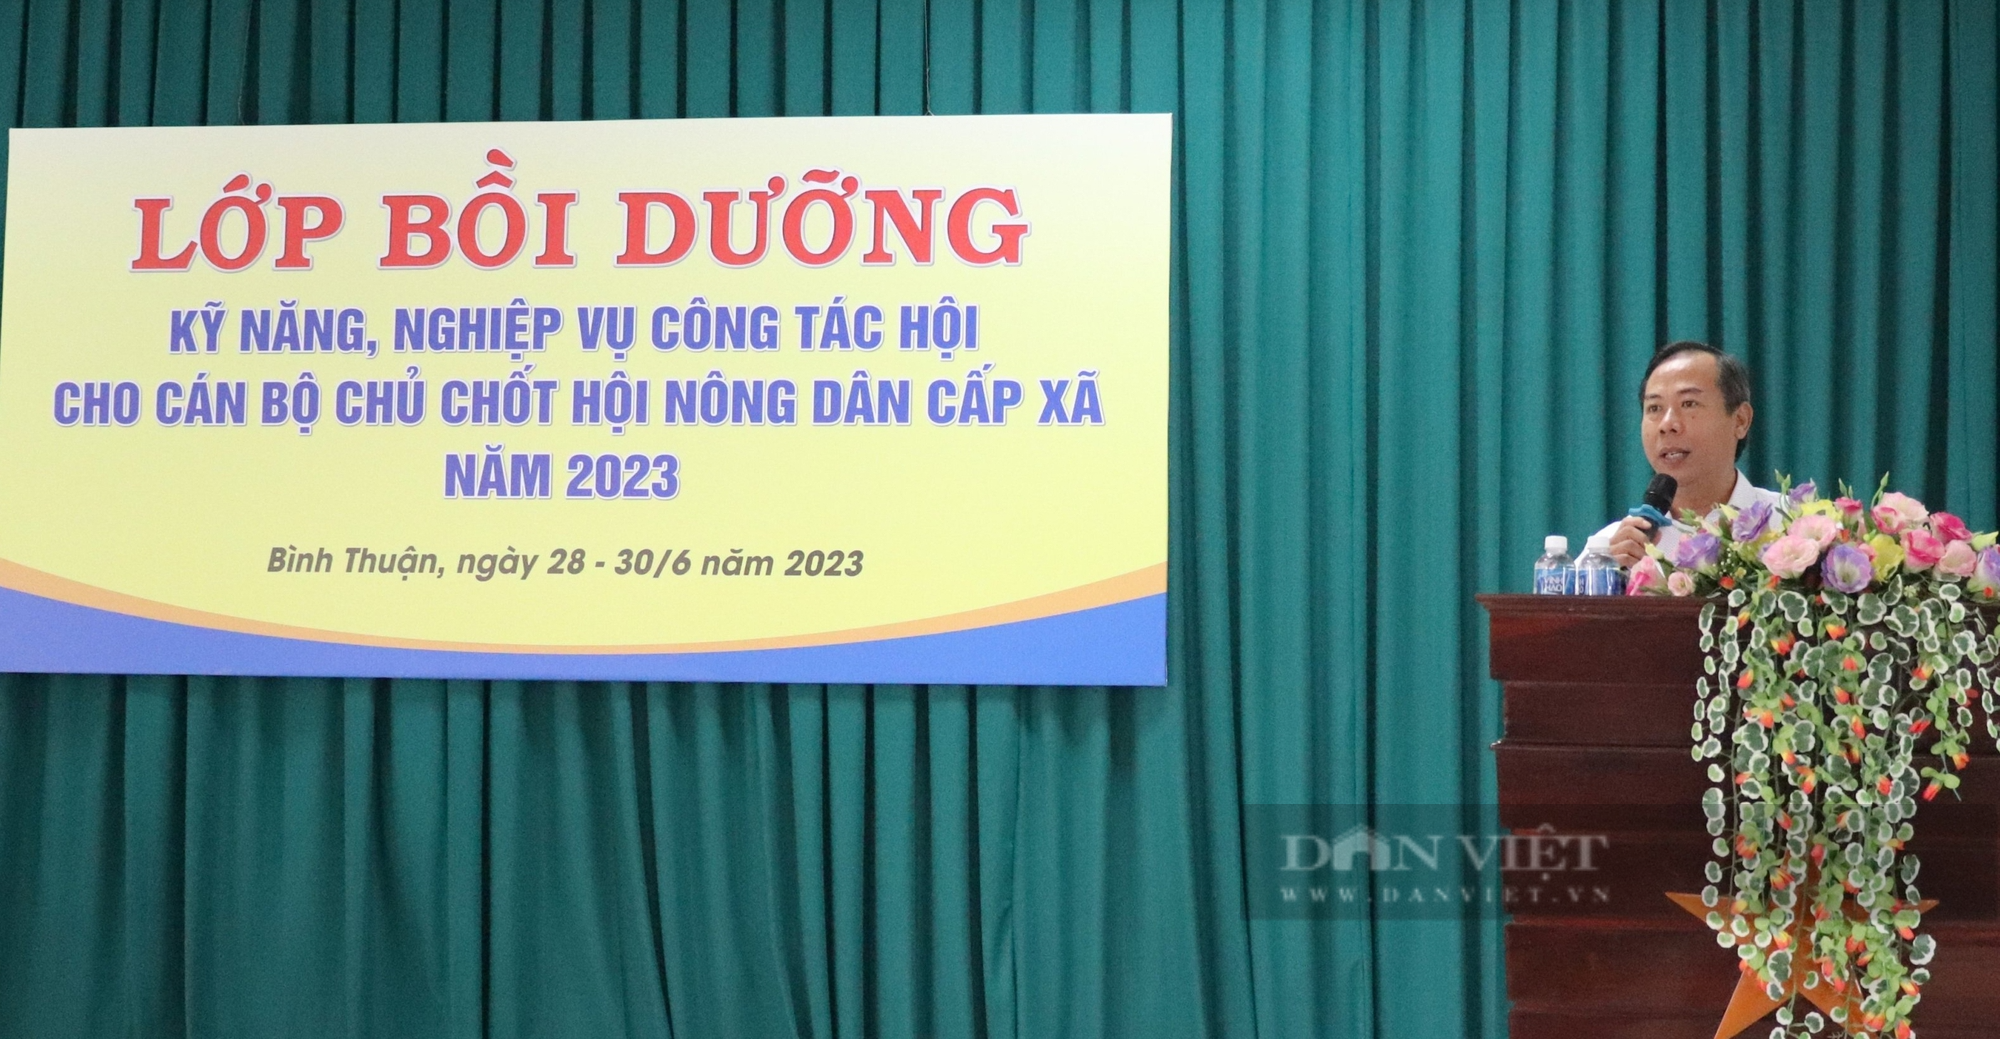 Bình Thuận: 125 cán bộ hội tham dự khóa tập huấn nghiệp vụ công tác Hội Nông dân năm 2023 - Ảnh 2.